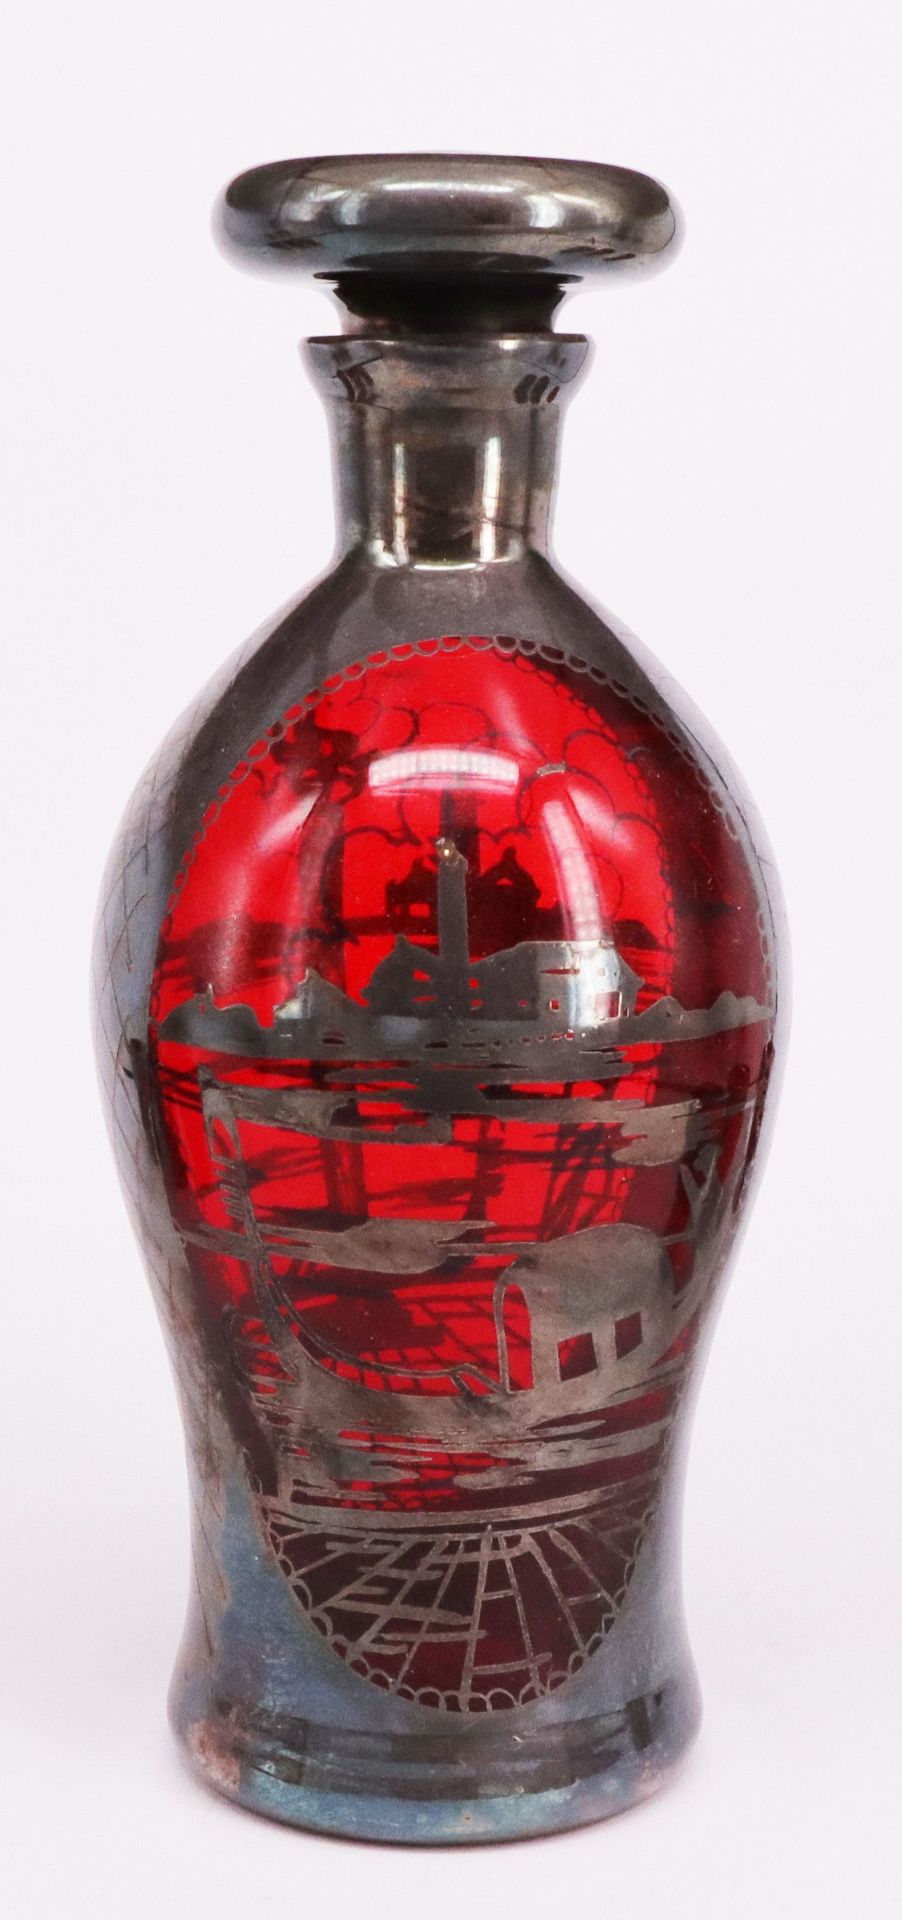 Karaffe mit sechs Schnapsgläschen, 19. Jh., dunkelrotes Glas mit einer feinen silbernen Verzierung - Bild 3 aus 4